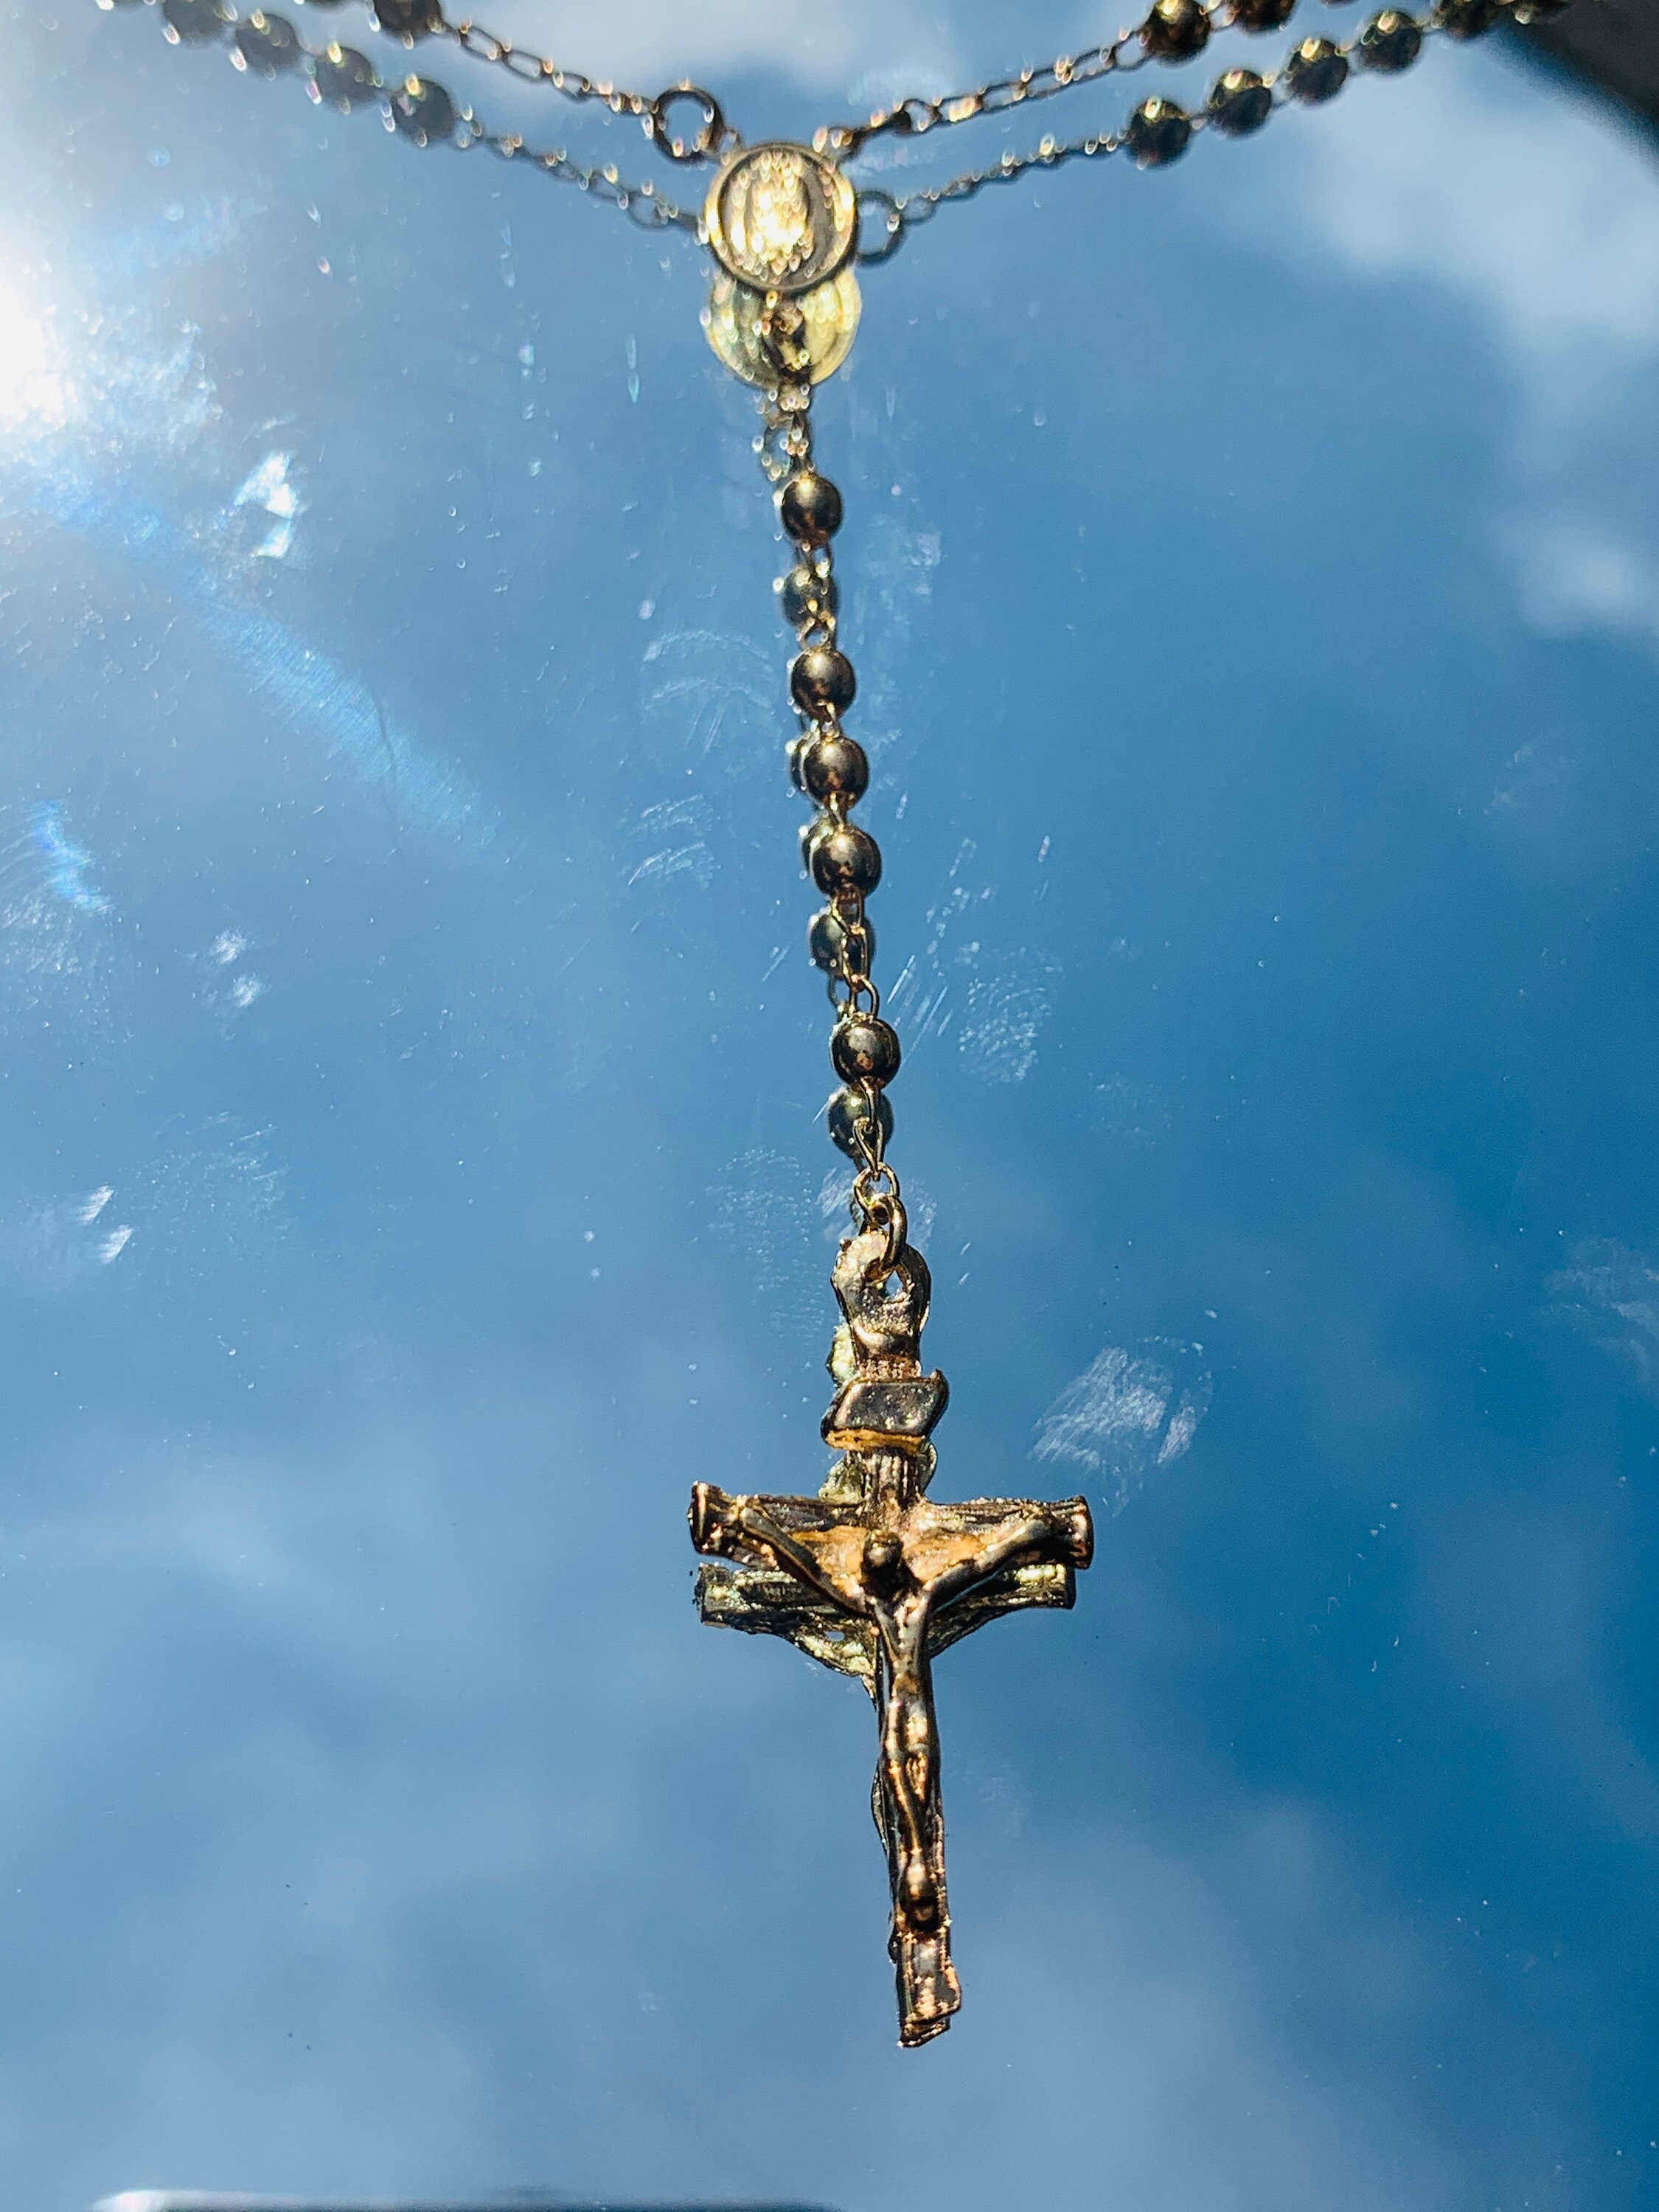 18k Gold filled Rosenkranz Kette Halskette,Winzig Gold Rosenkranz Kreuz  Halskette für Layering,Religiöses Geschenk für sie,zierliche Kreuz Halskette,Schlichte  Corss - .de